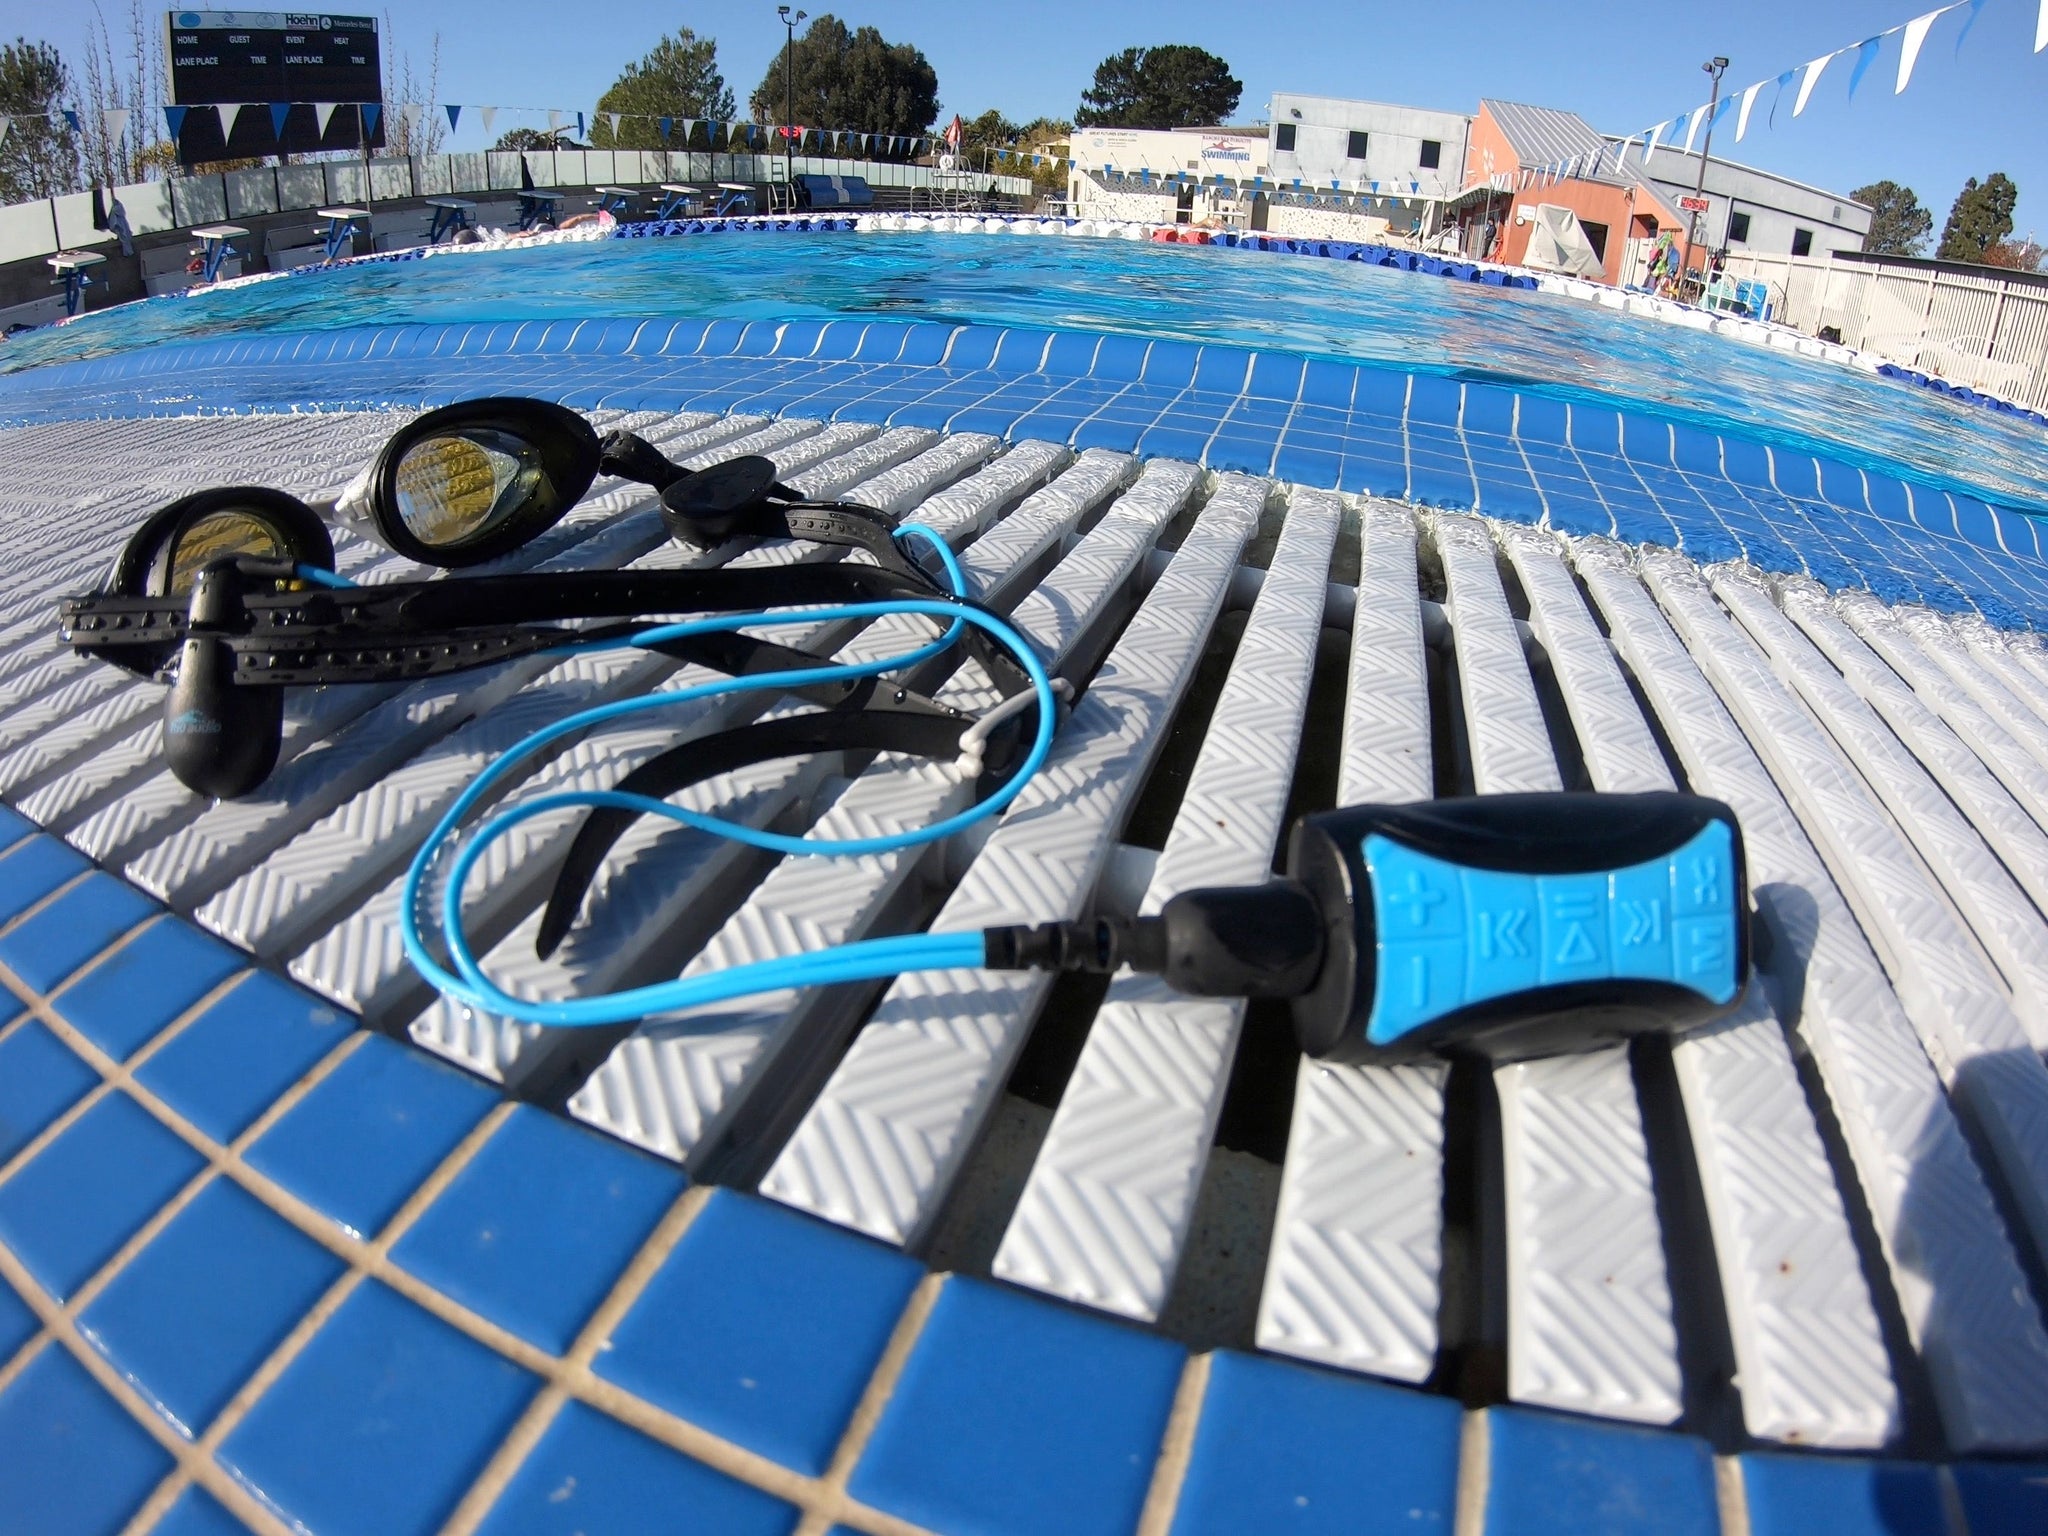 H2O Audio Stream 3 PRO y Surge S+ Auriculares – Reproductor de MP3  impermeable de música subacuática para nadar con Bluetooth y cable corto